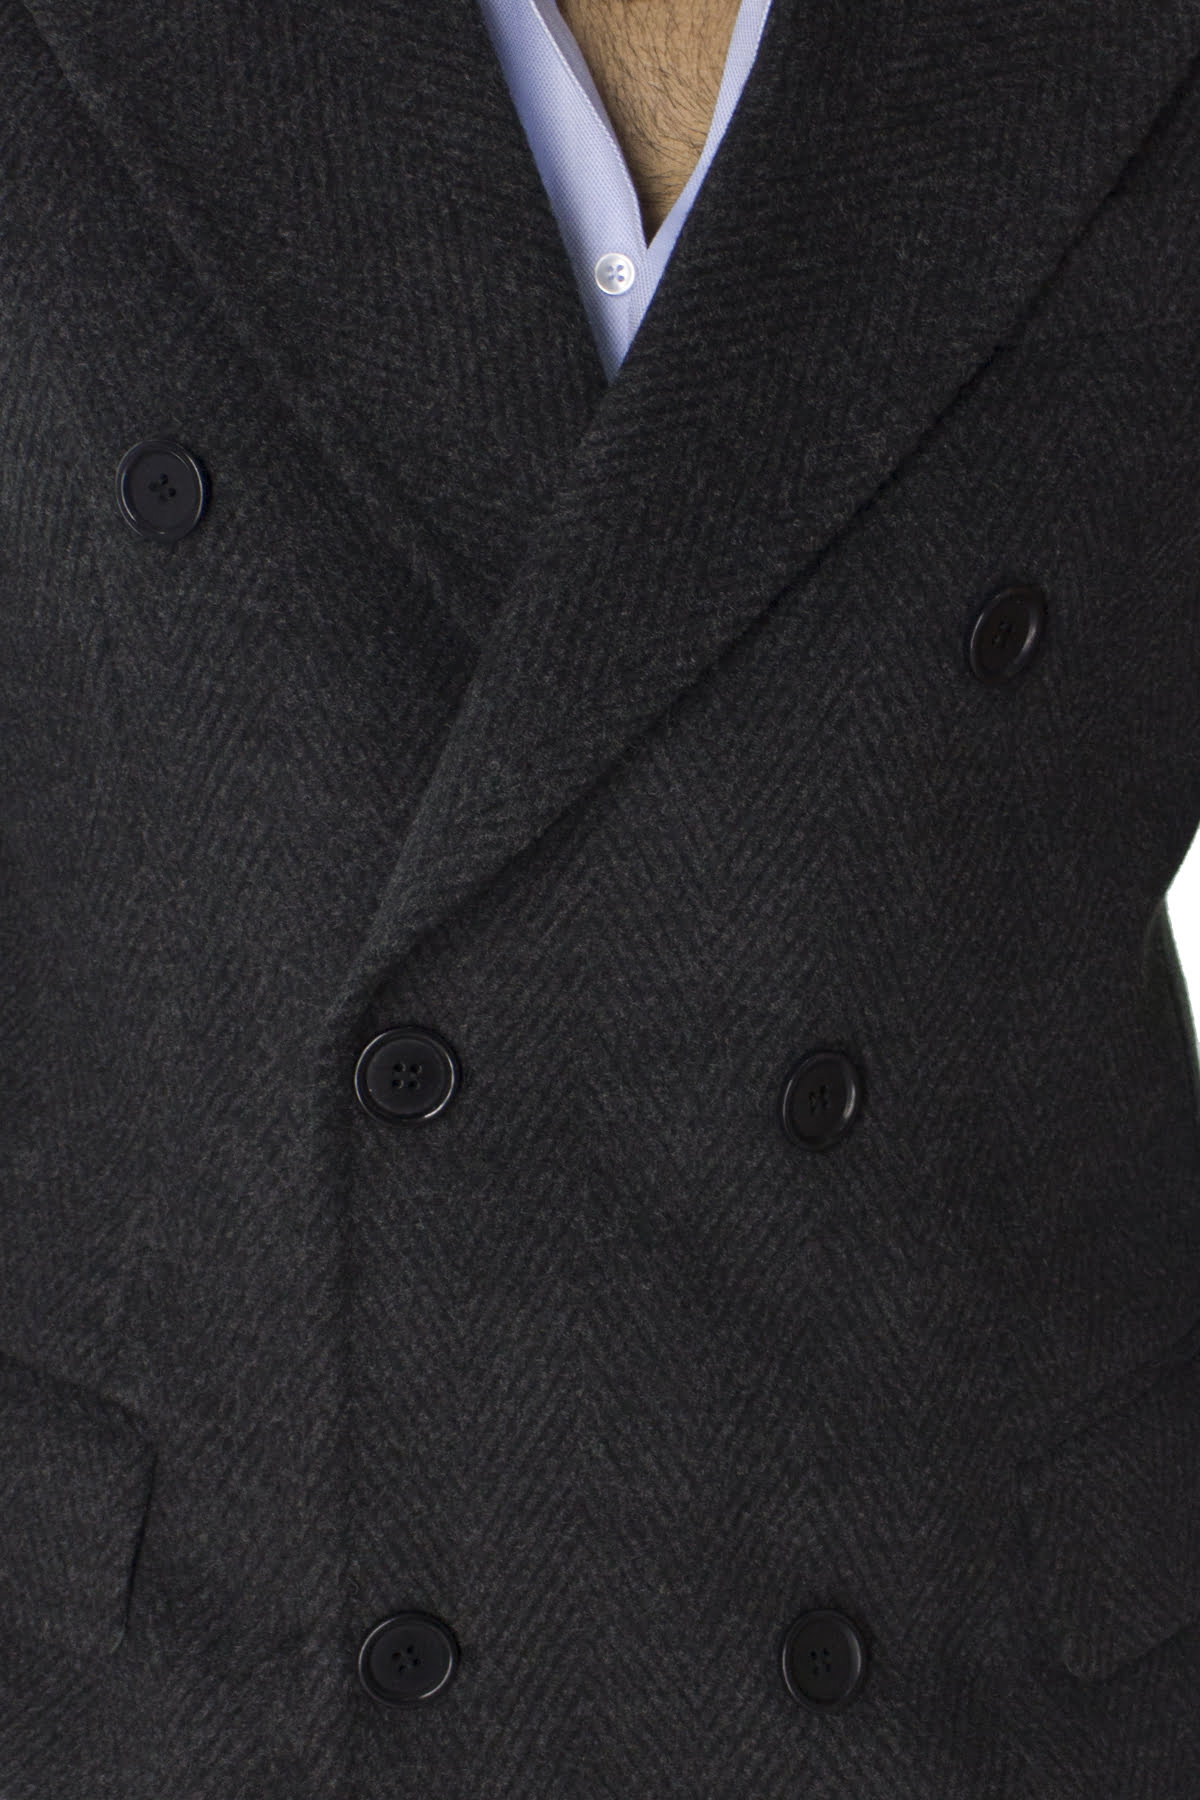 Cappotto uomo grigio spigato doppiopetto in lana rever largo made in italy